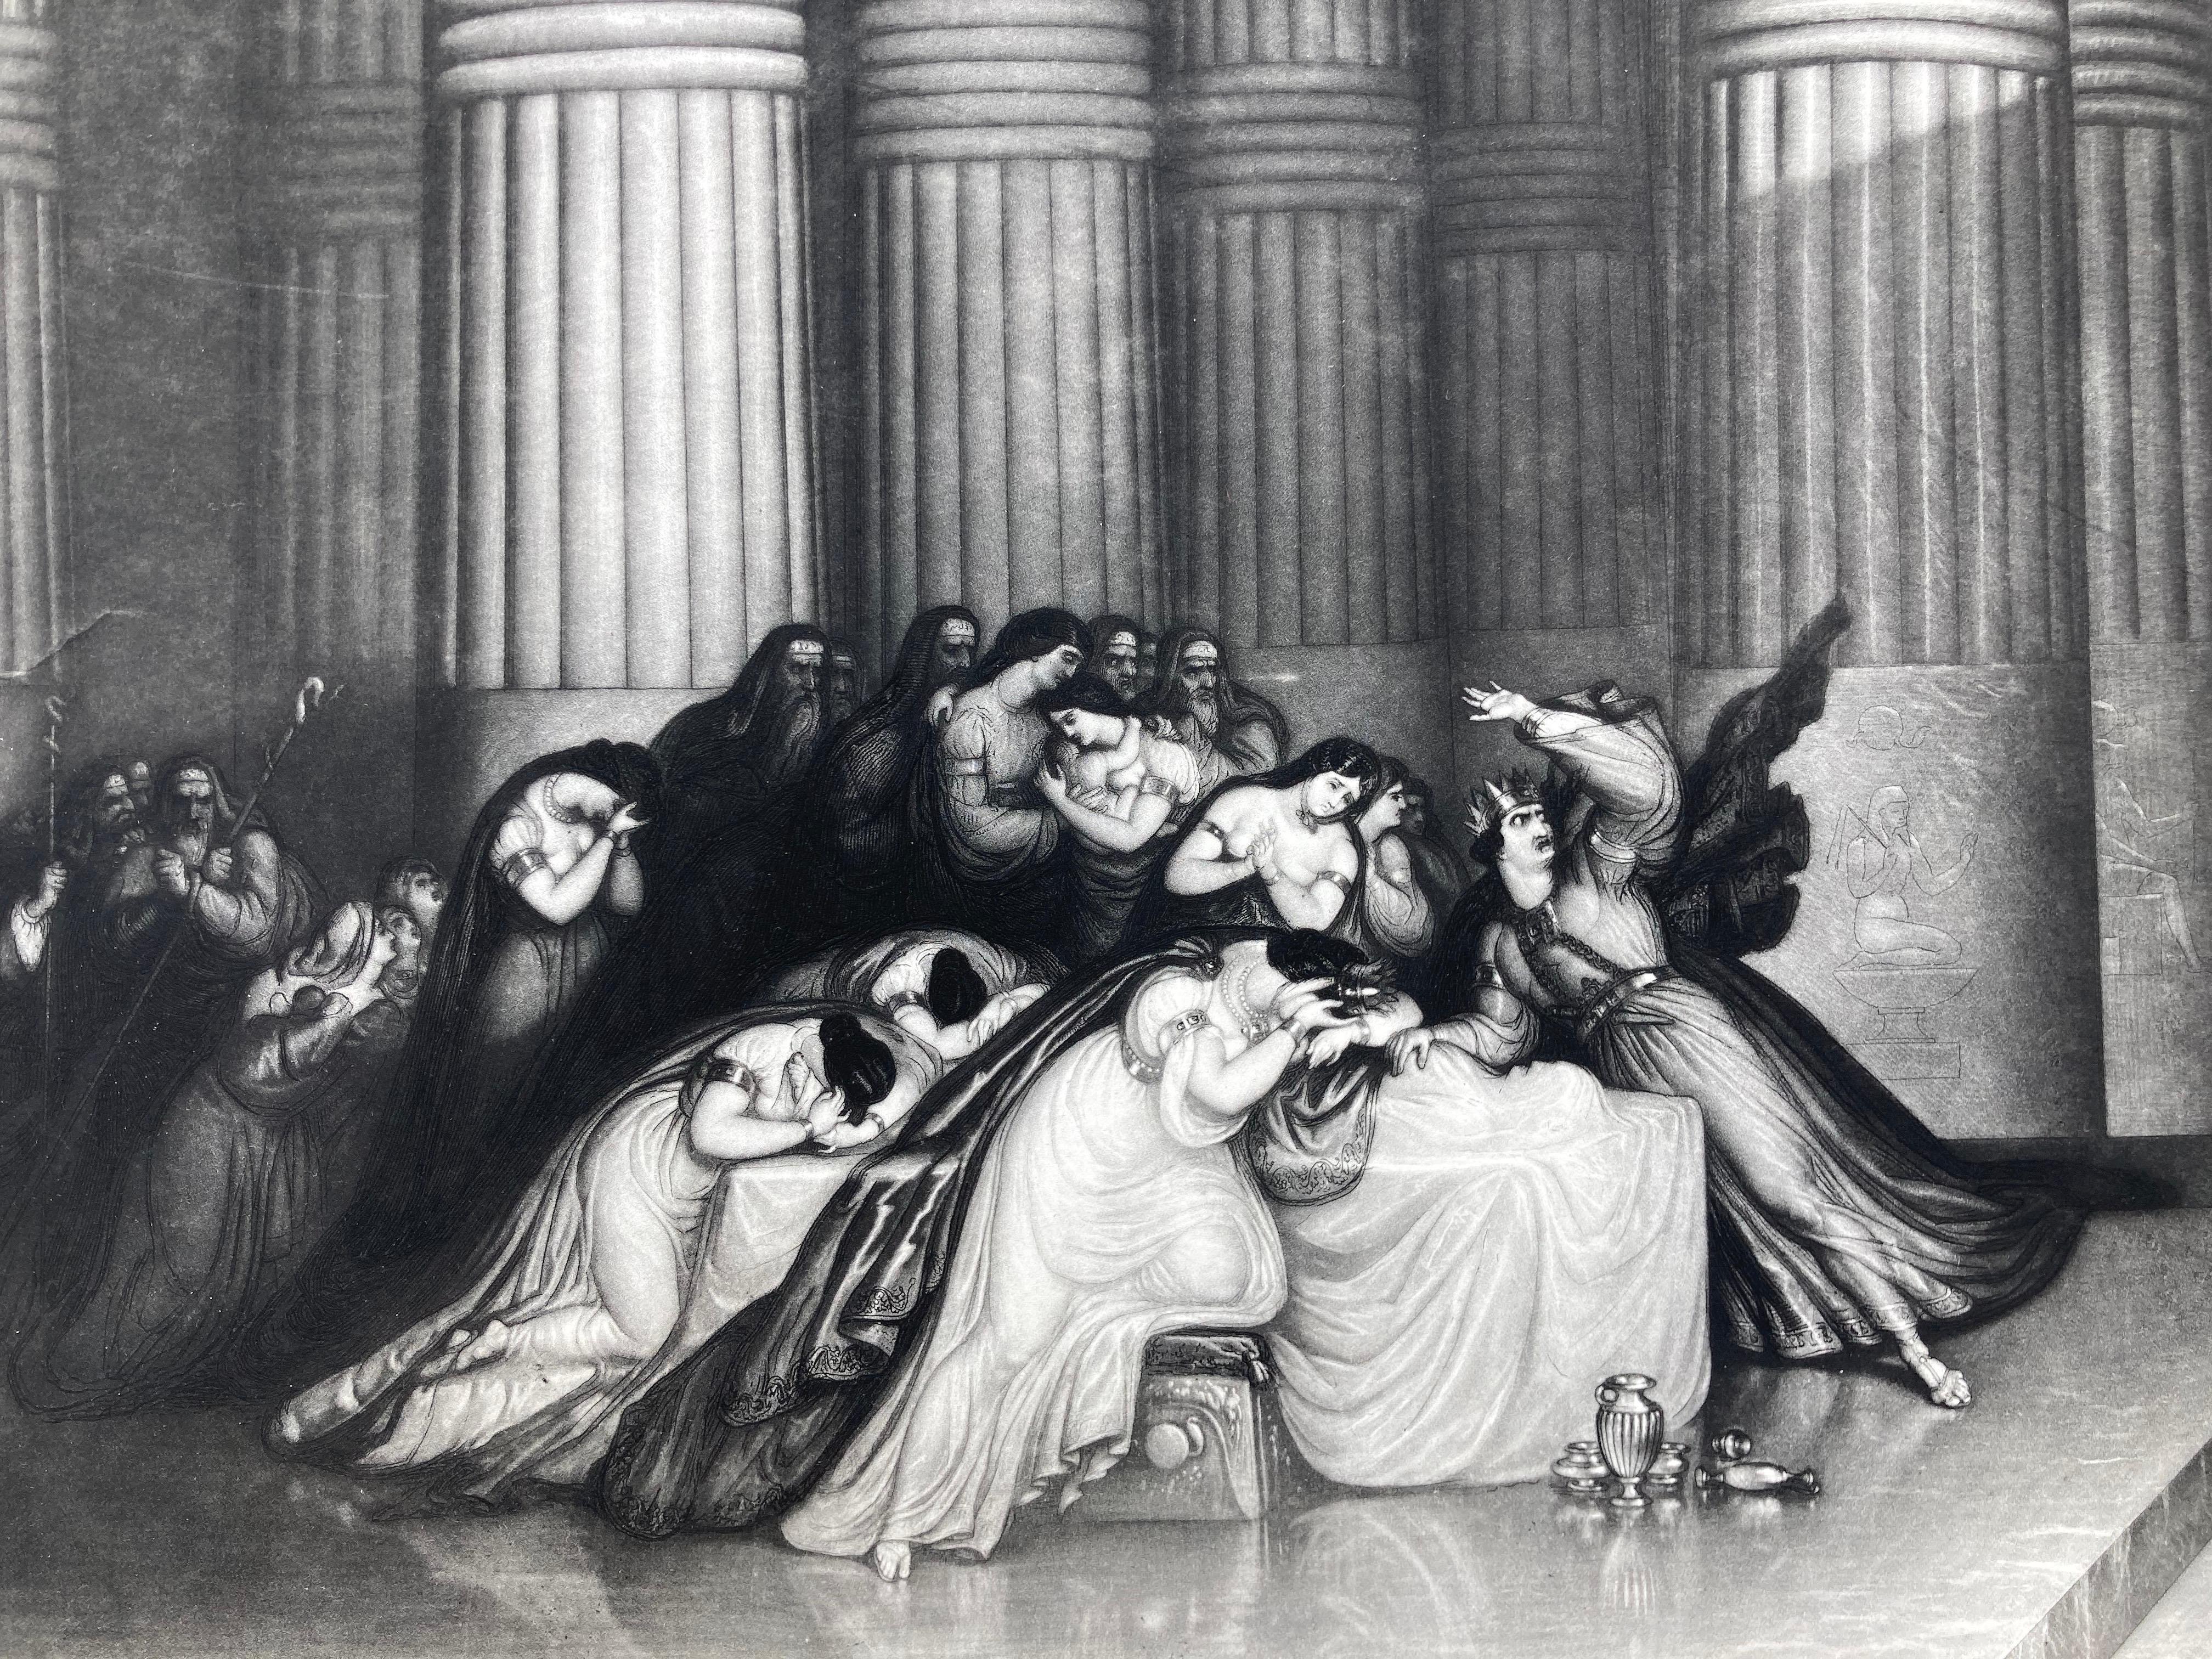 JOHN MARTIN (1789 - 1854)
TOD DES ERSTGEBOREN, Seiner Majestät König Louise Philippe, König der Franzosen, gewidmet, als Zeichen der Dankbarkeit des Künstlers für die hohen Ehren, die ihm seine Majestät gnädigerweise erwiesen hat, 1836
